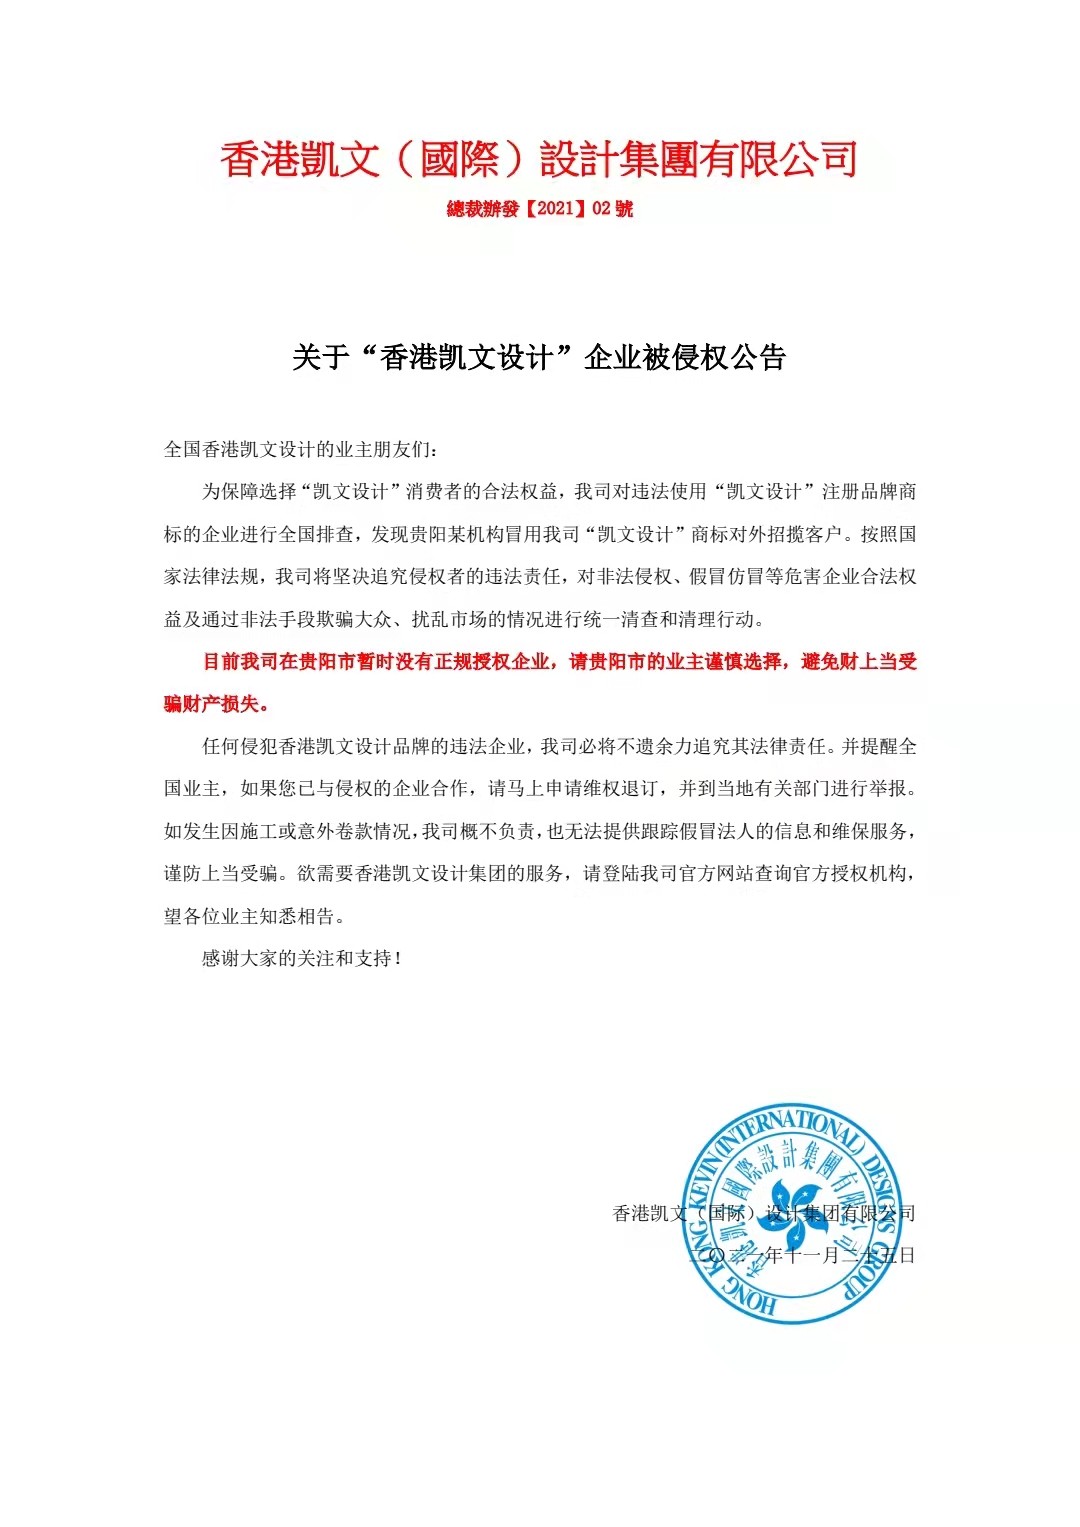 香港凱文設計集團發布公告：維護企業權益，追訴侵權責任